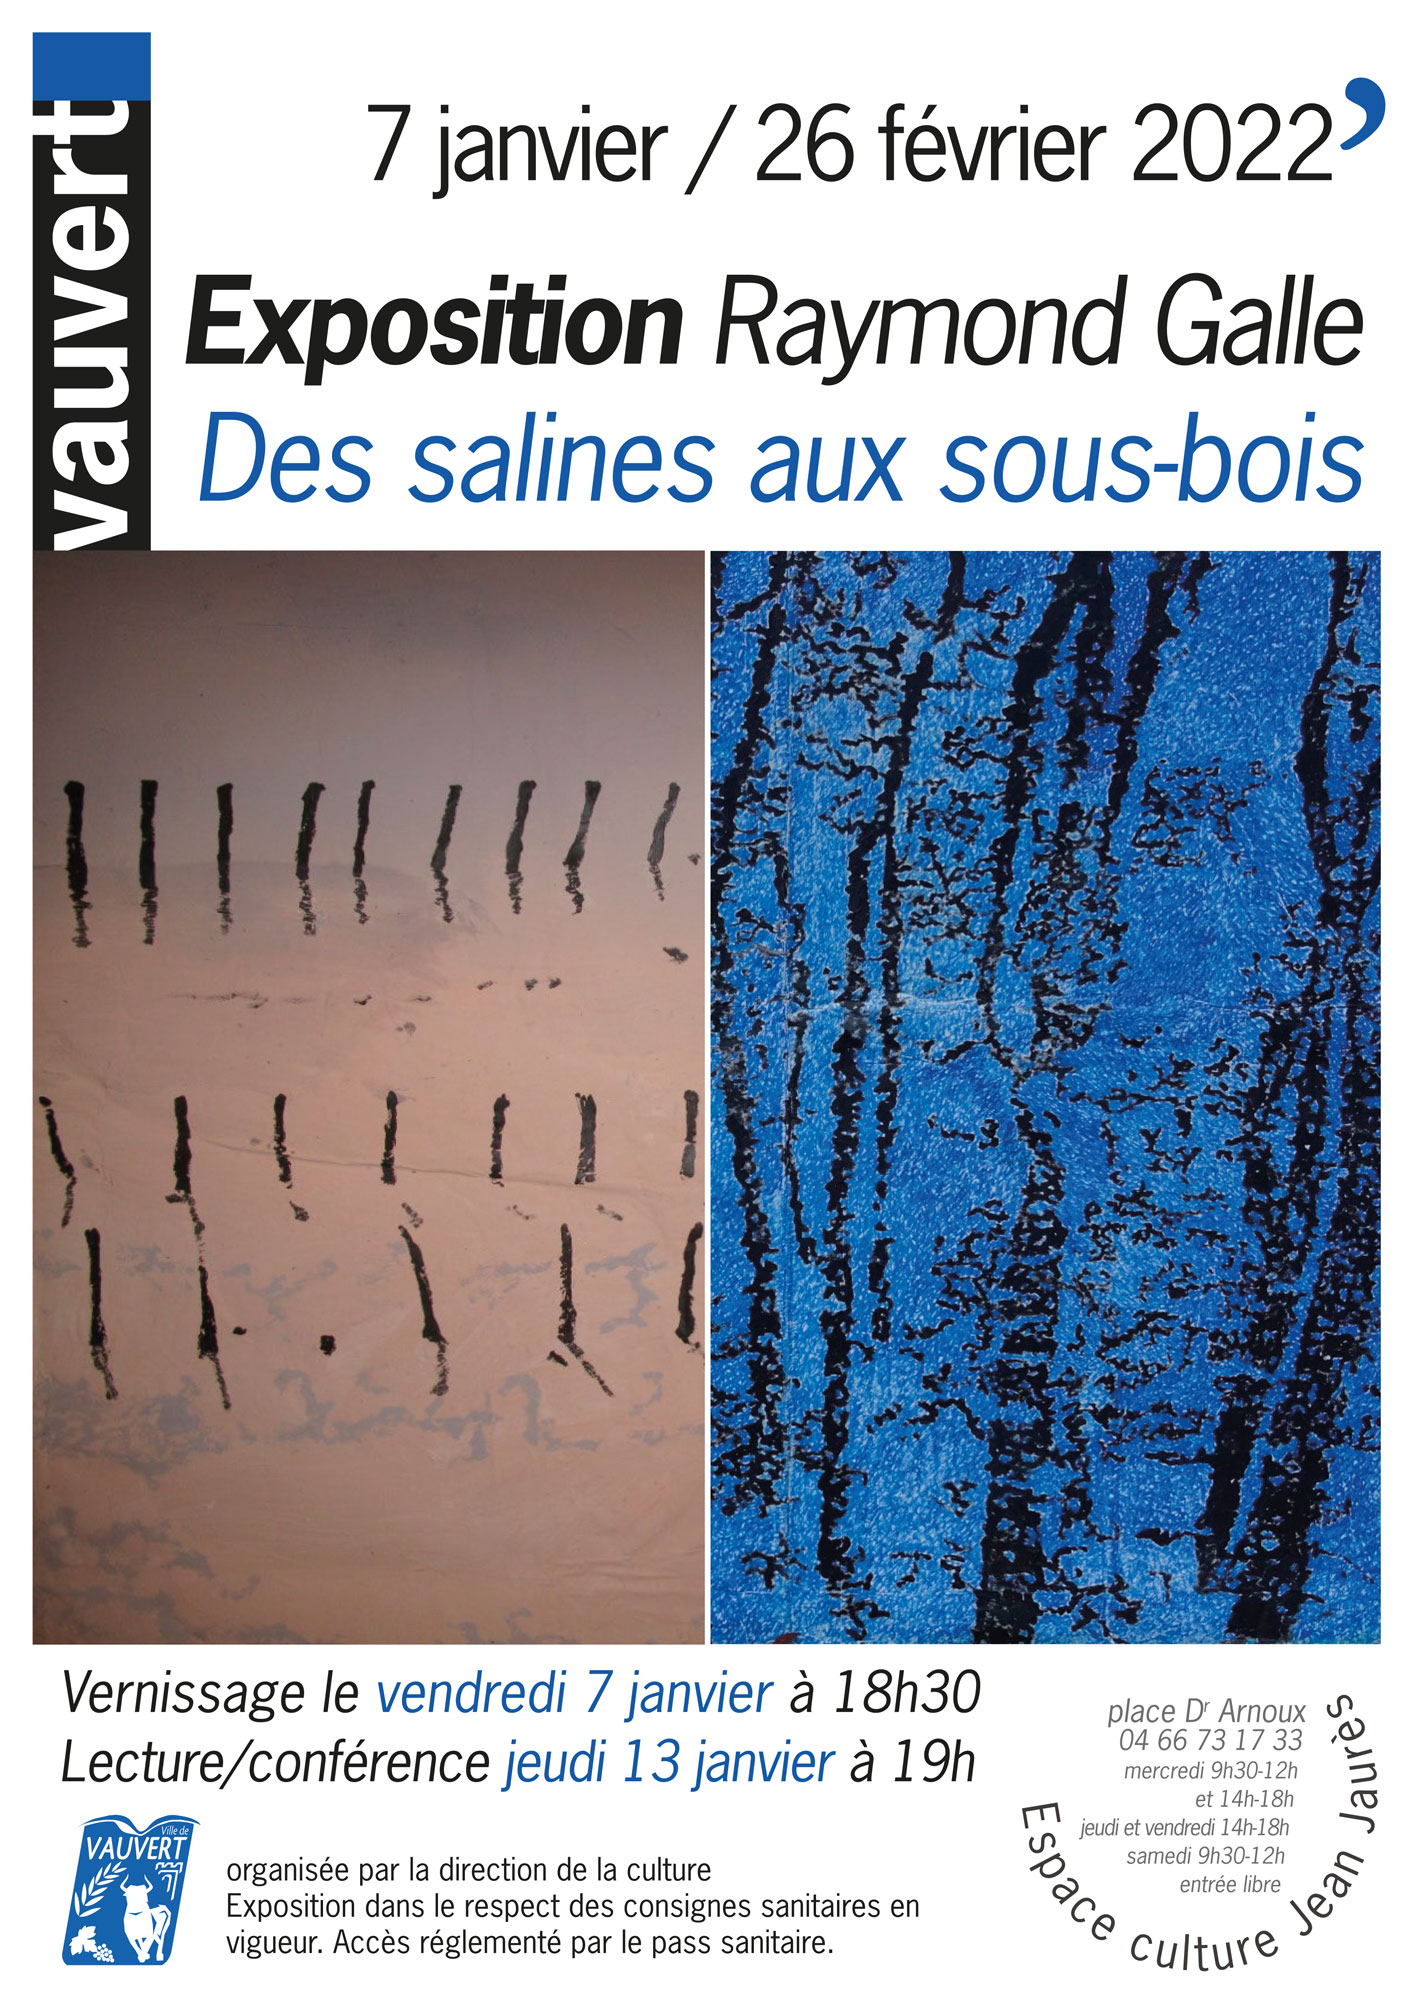 Exposition Raymond Galle Vauvert 2022